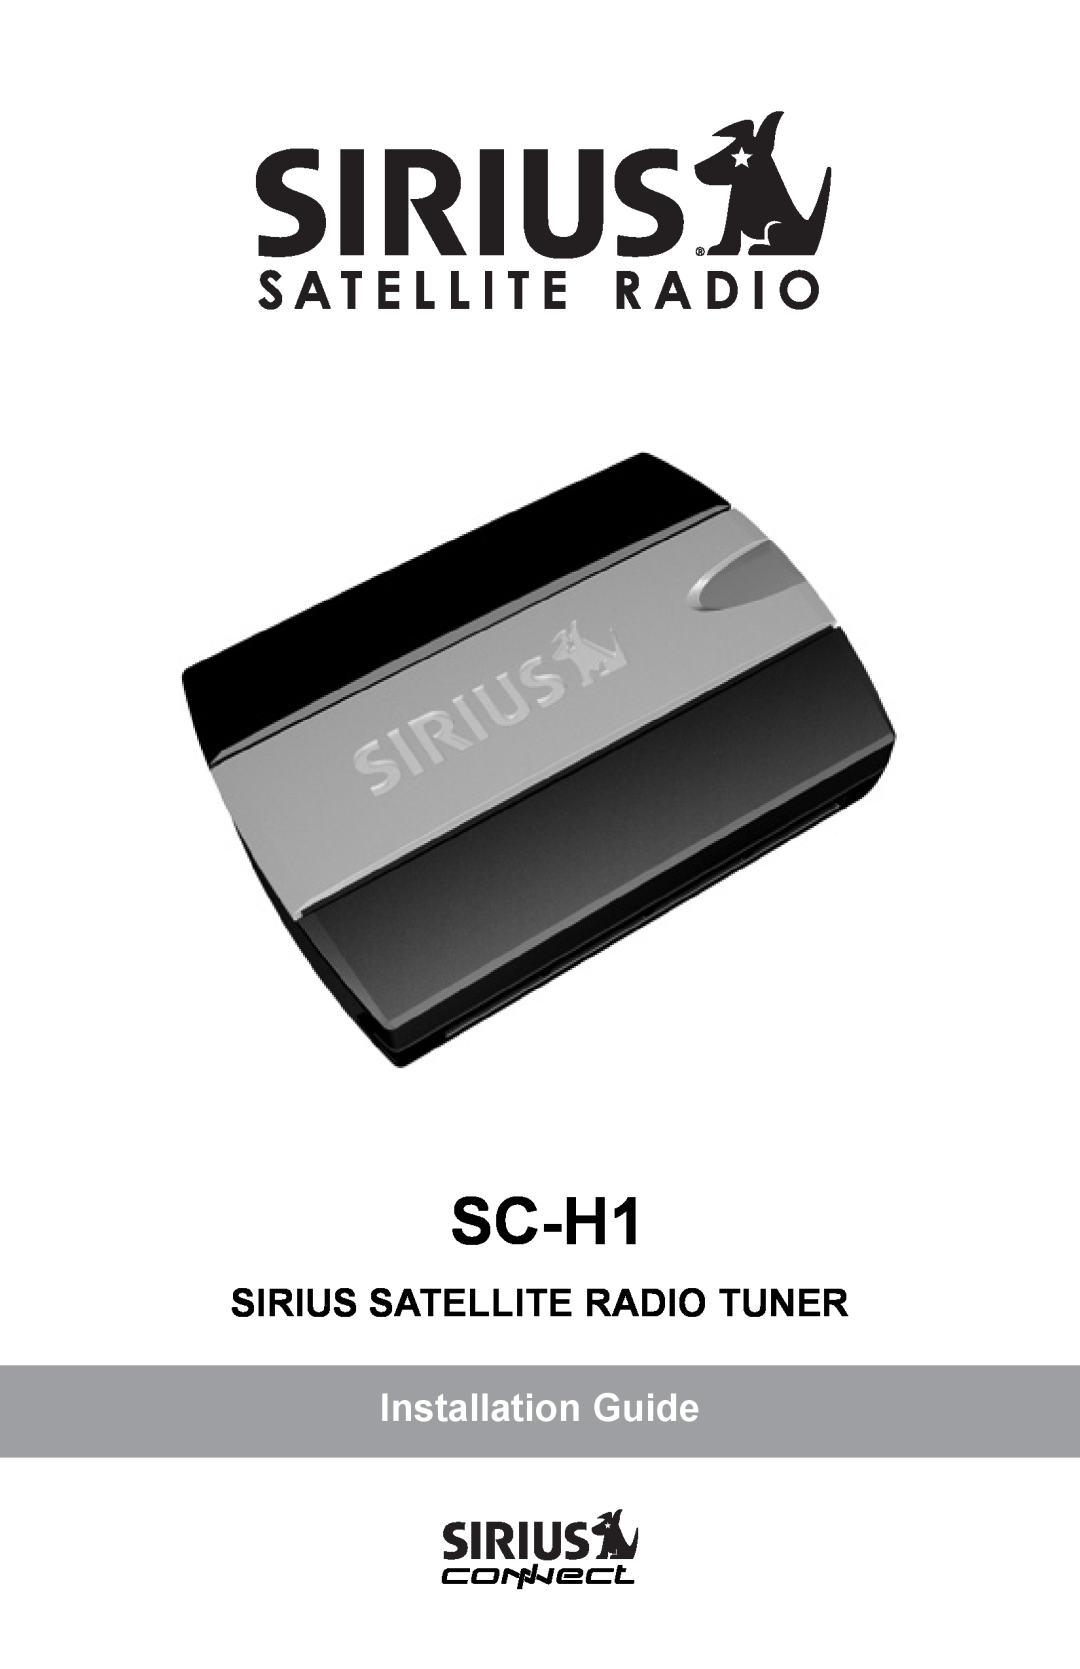 Sirius Satellite Radio SCH1 manual Sirius Satellite Radio Tuner, SC-H1, Installation Guide 